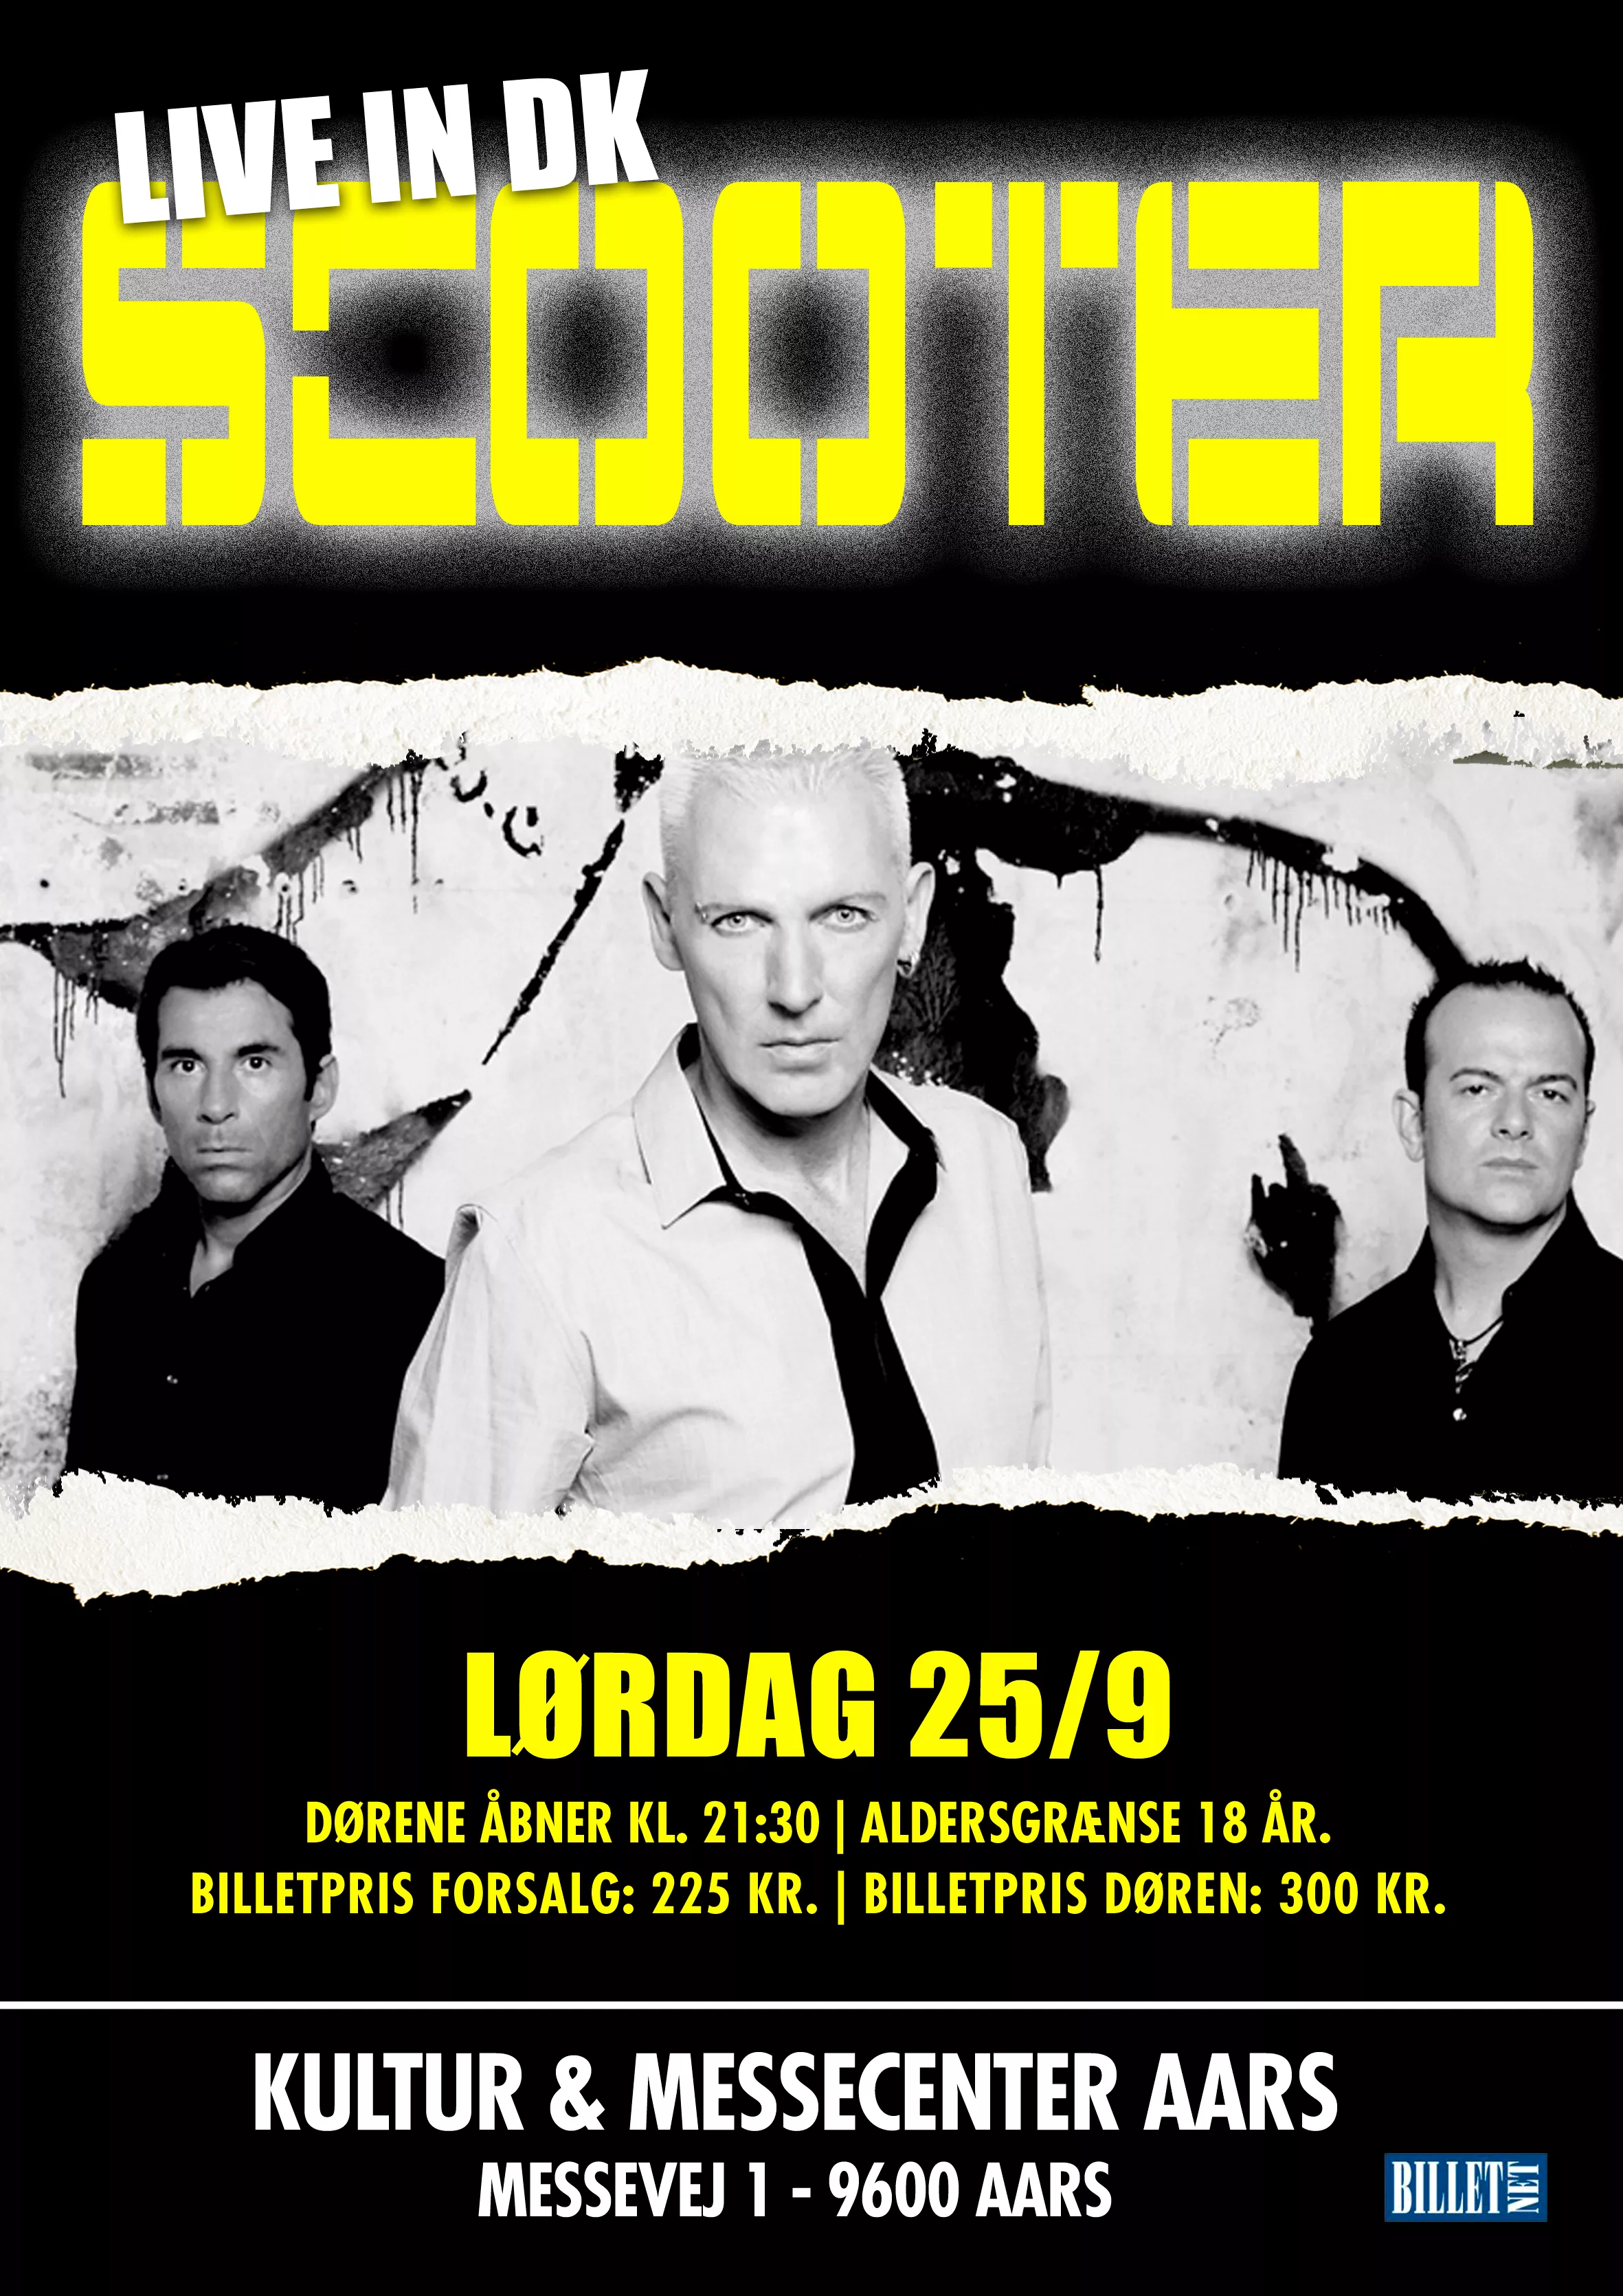 Scooter giver koncert i Danmark